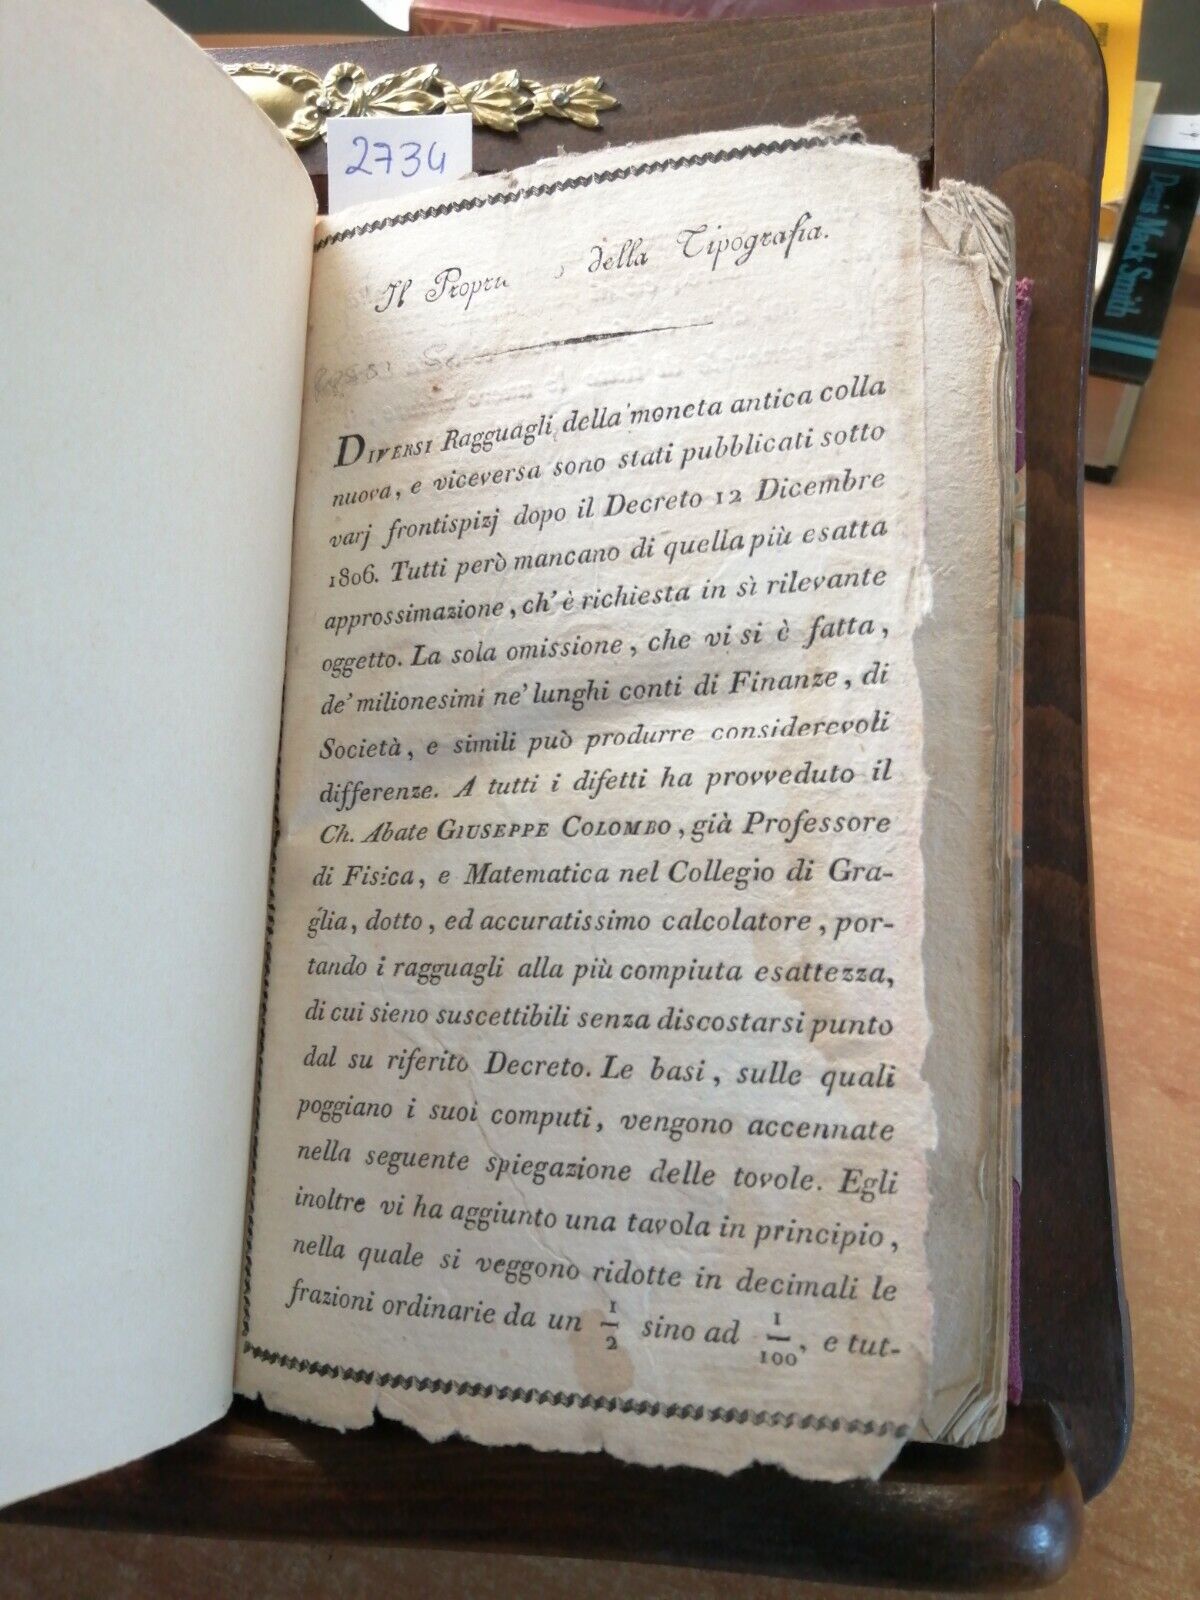 STORIA DEL POPOLO EBREO compendiata da Francesco Soave 1814 TIP. VIGEVANO (